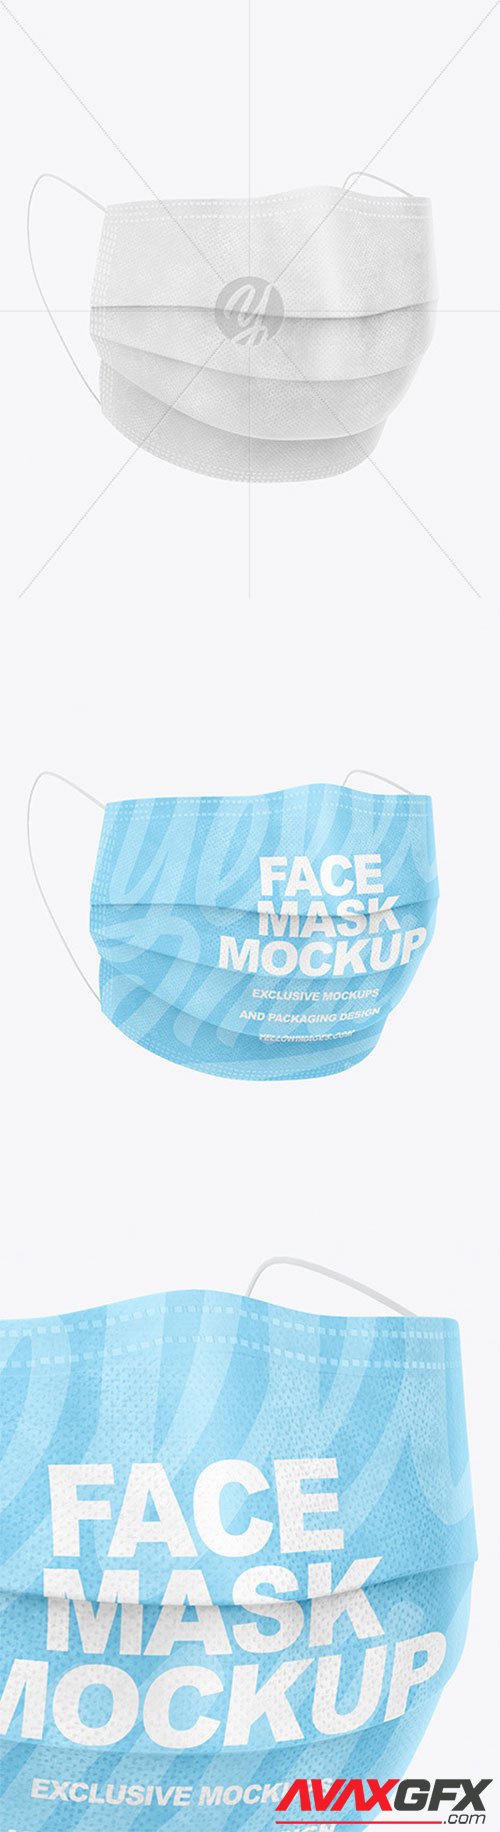 Medical Face Mask Mockup 59583